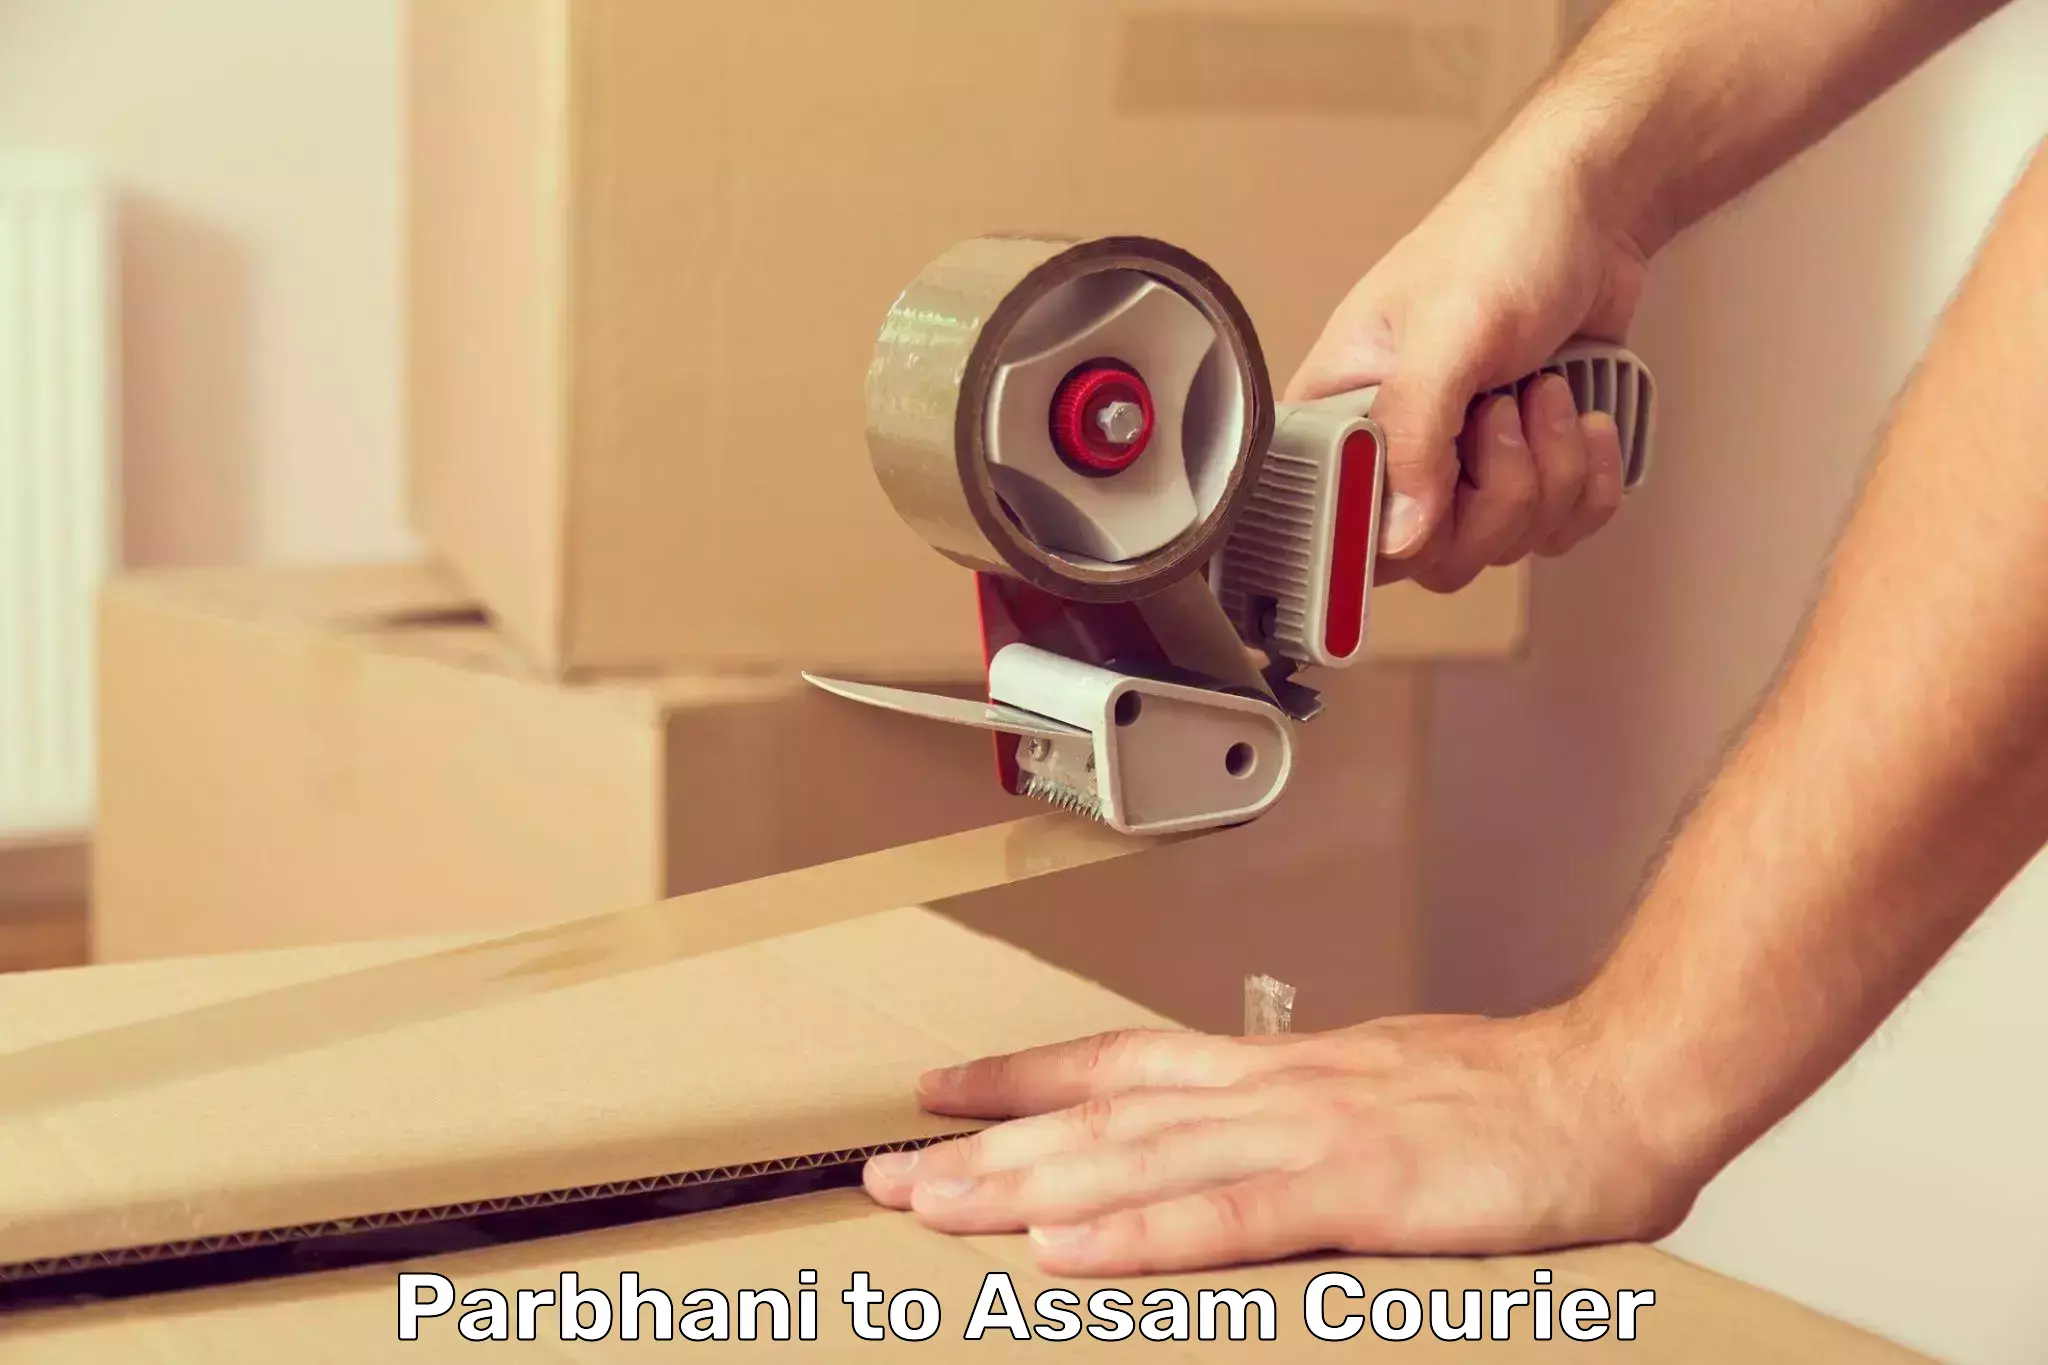 Courier service comparison Parbhani to Assam